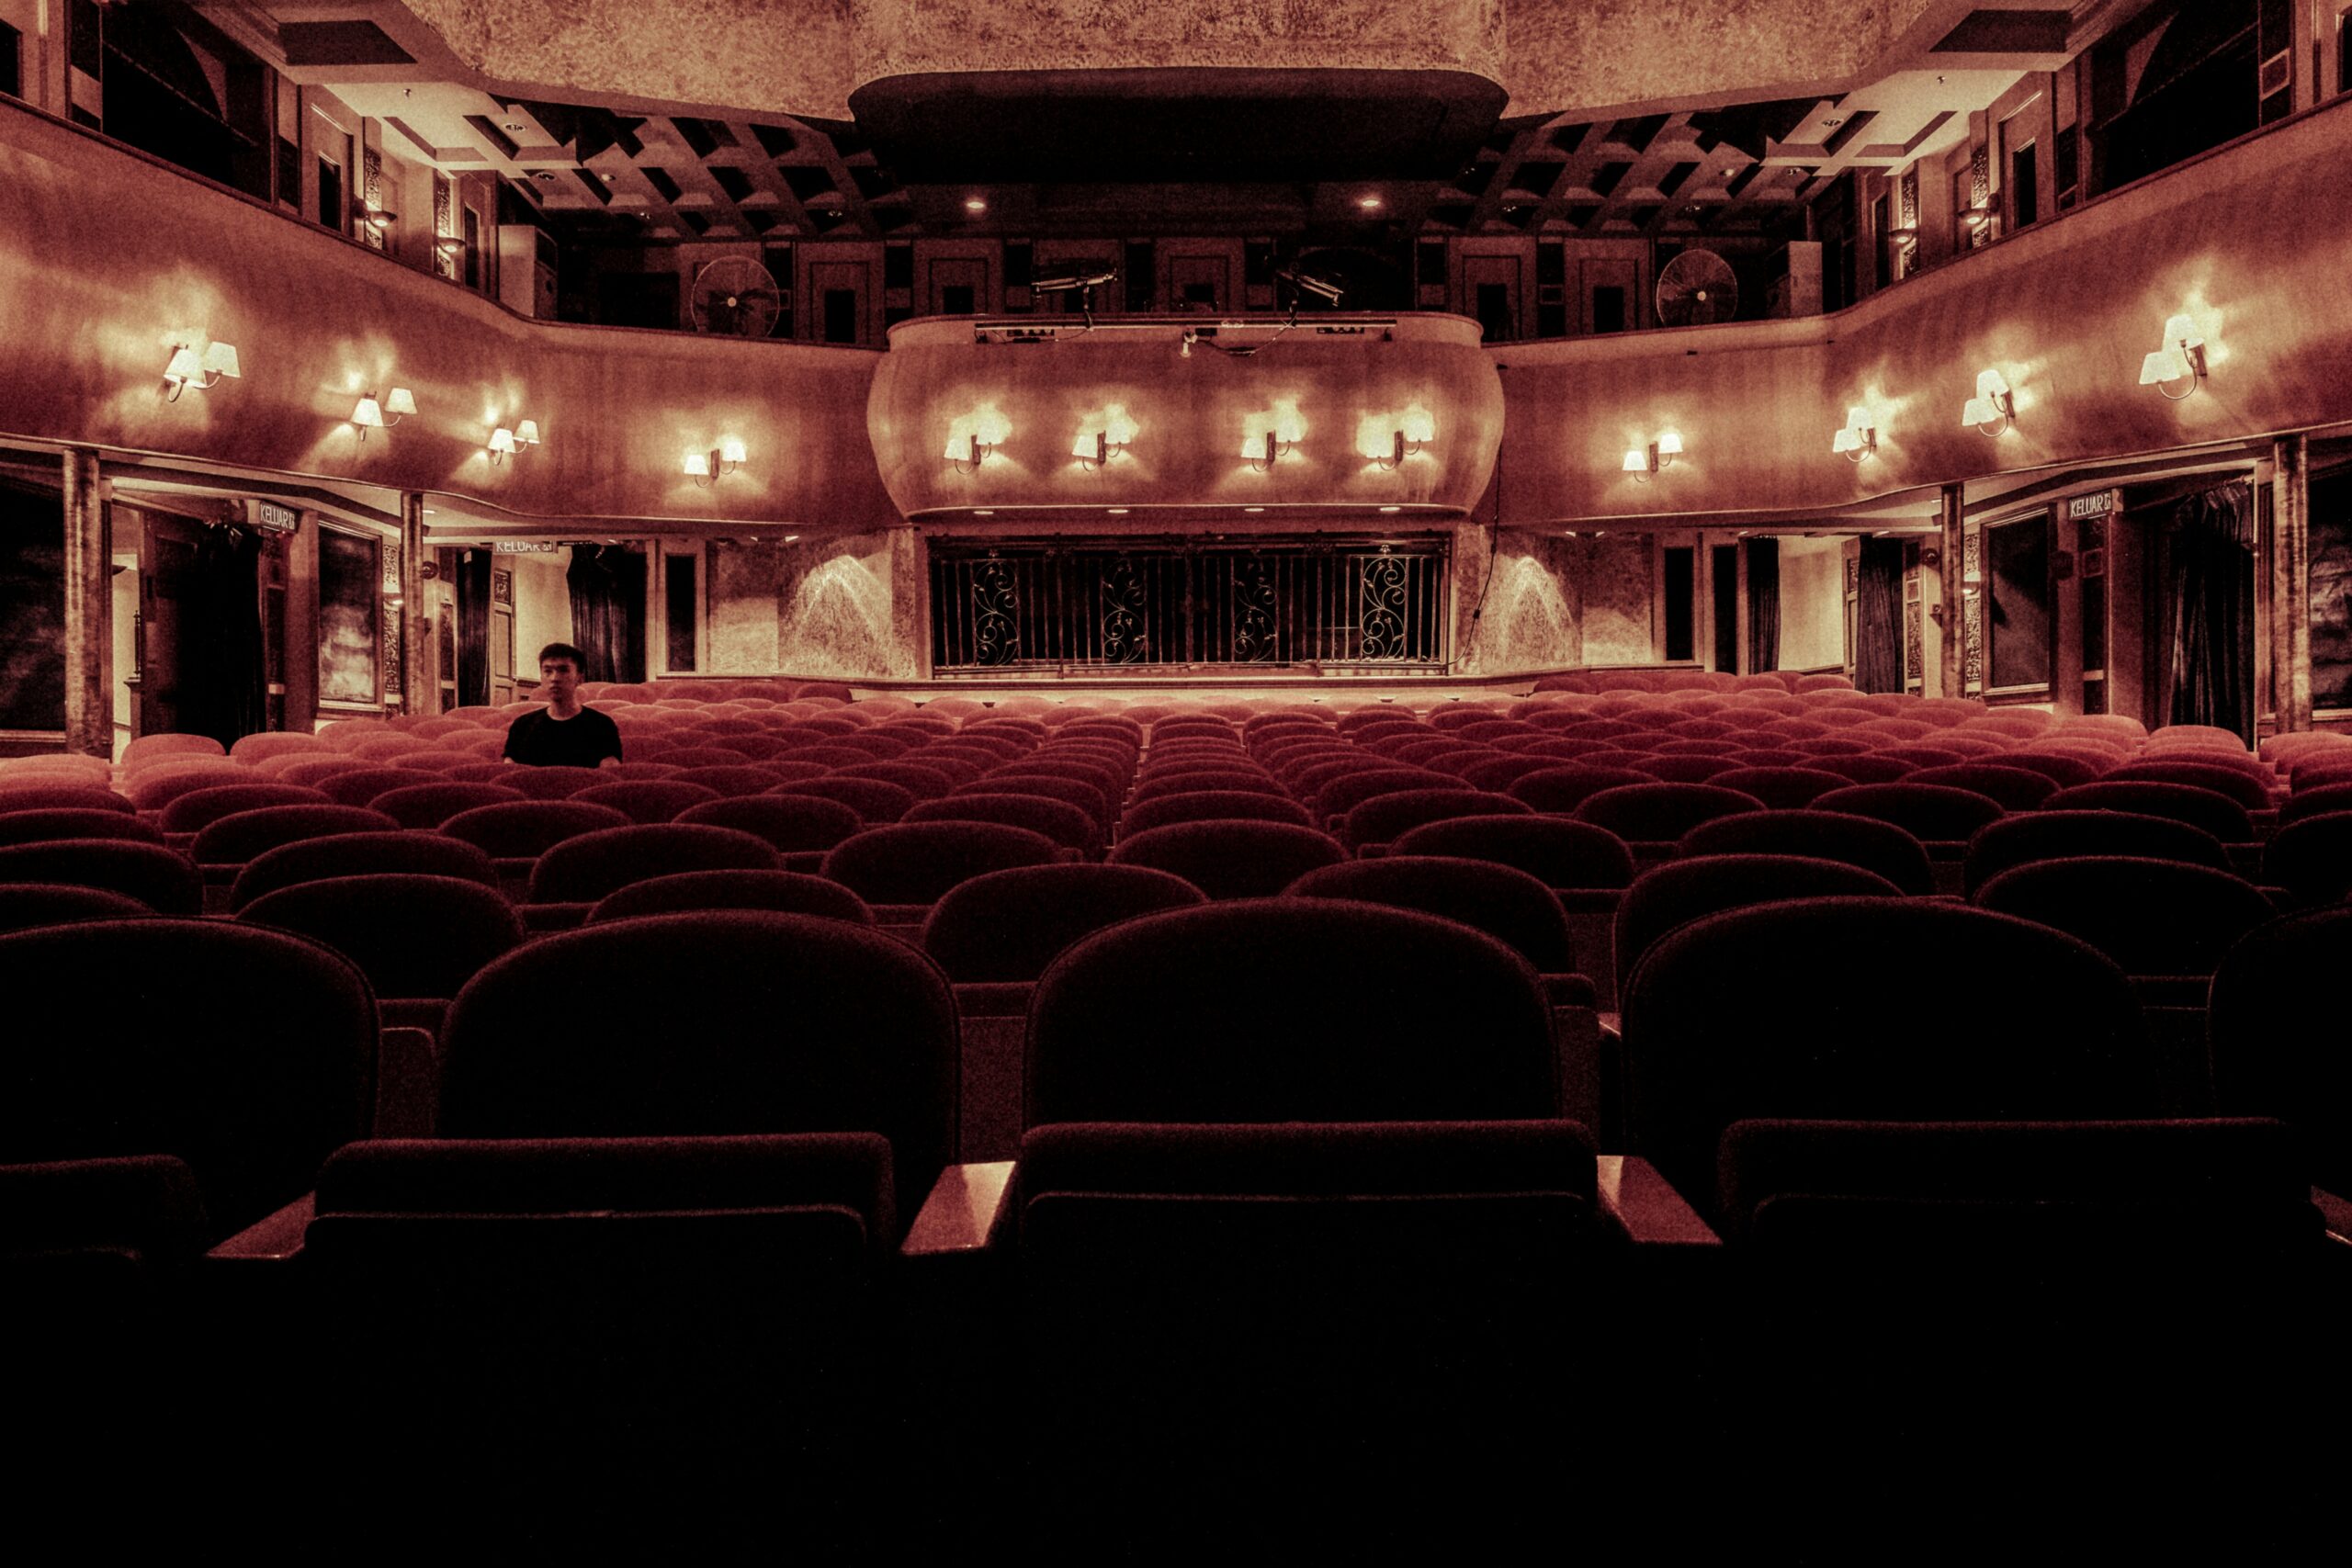 Teatro San Carlo: Teatro dell’Opera di Napoli